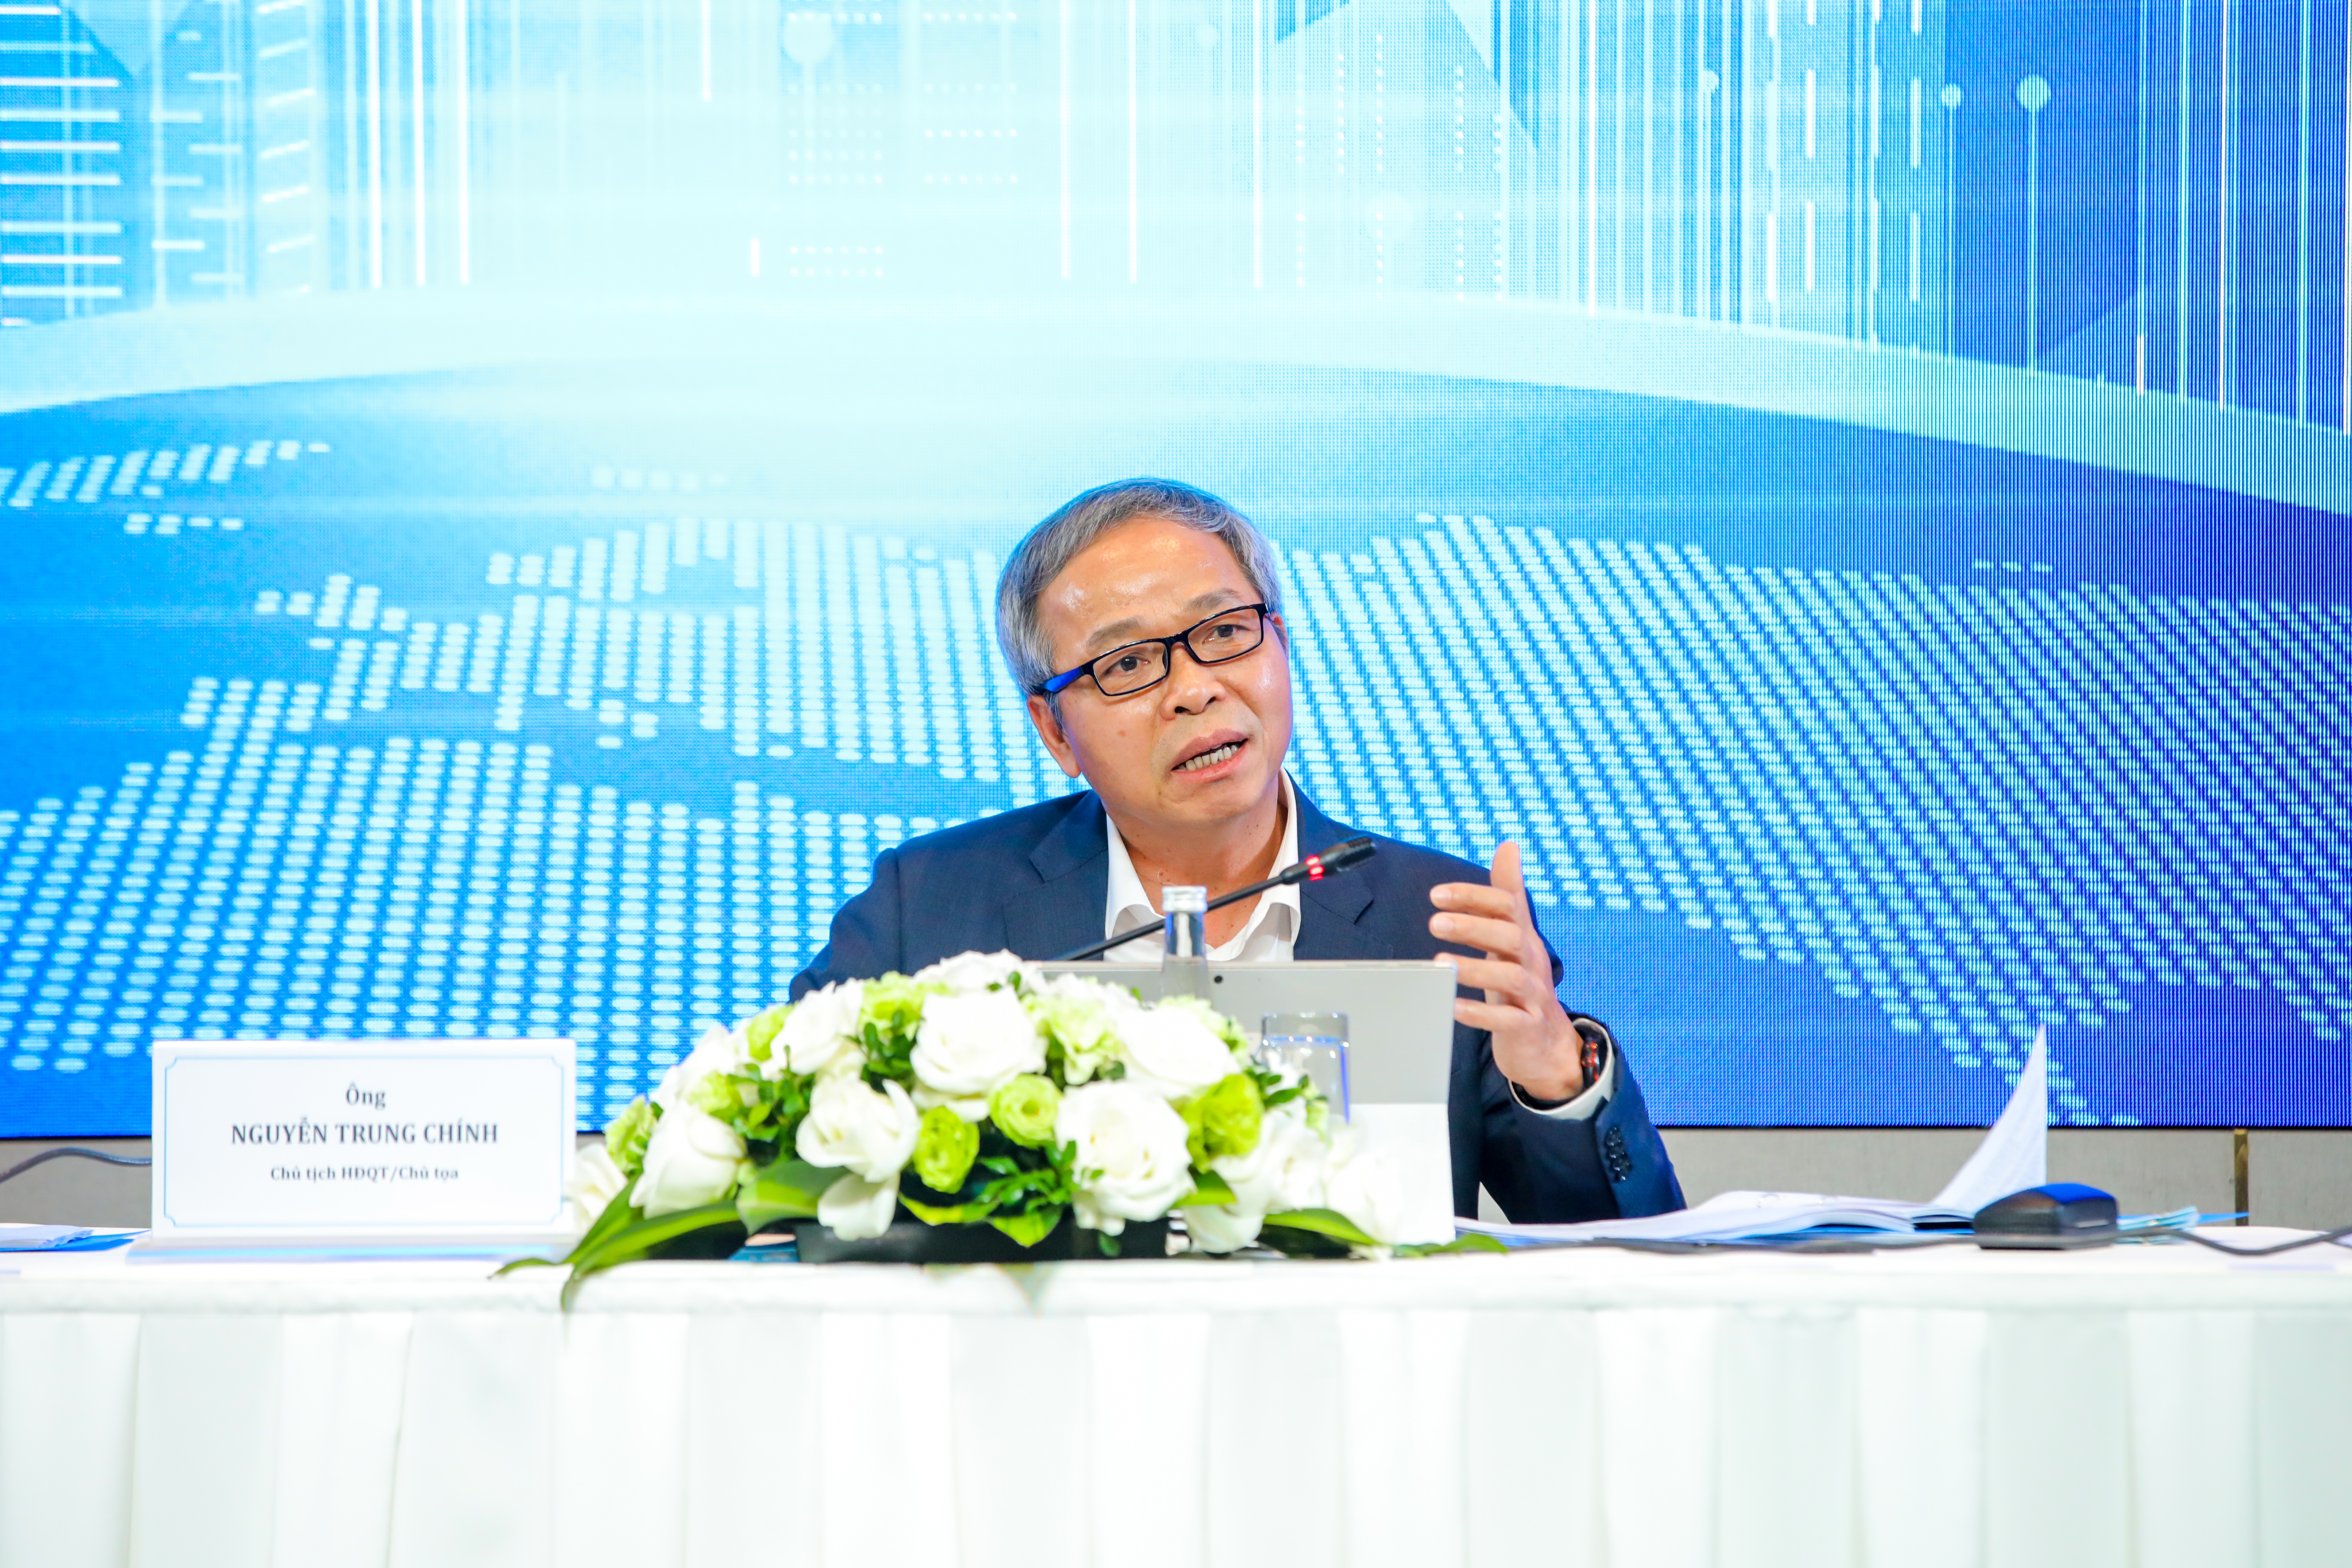 Chủ tịch HĐQT/Chủ tịch điều hành - ông Nguyễn Trung Chính phát biểu tại đại hội.